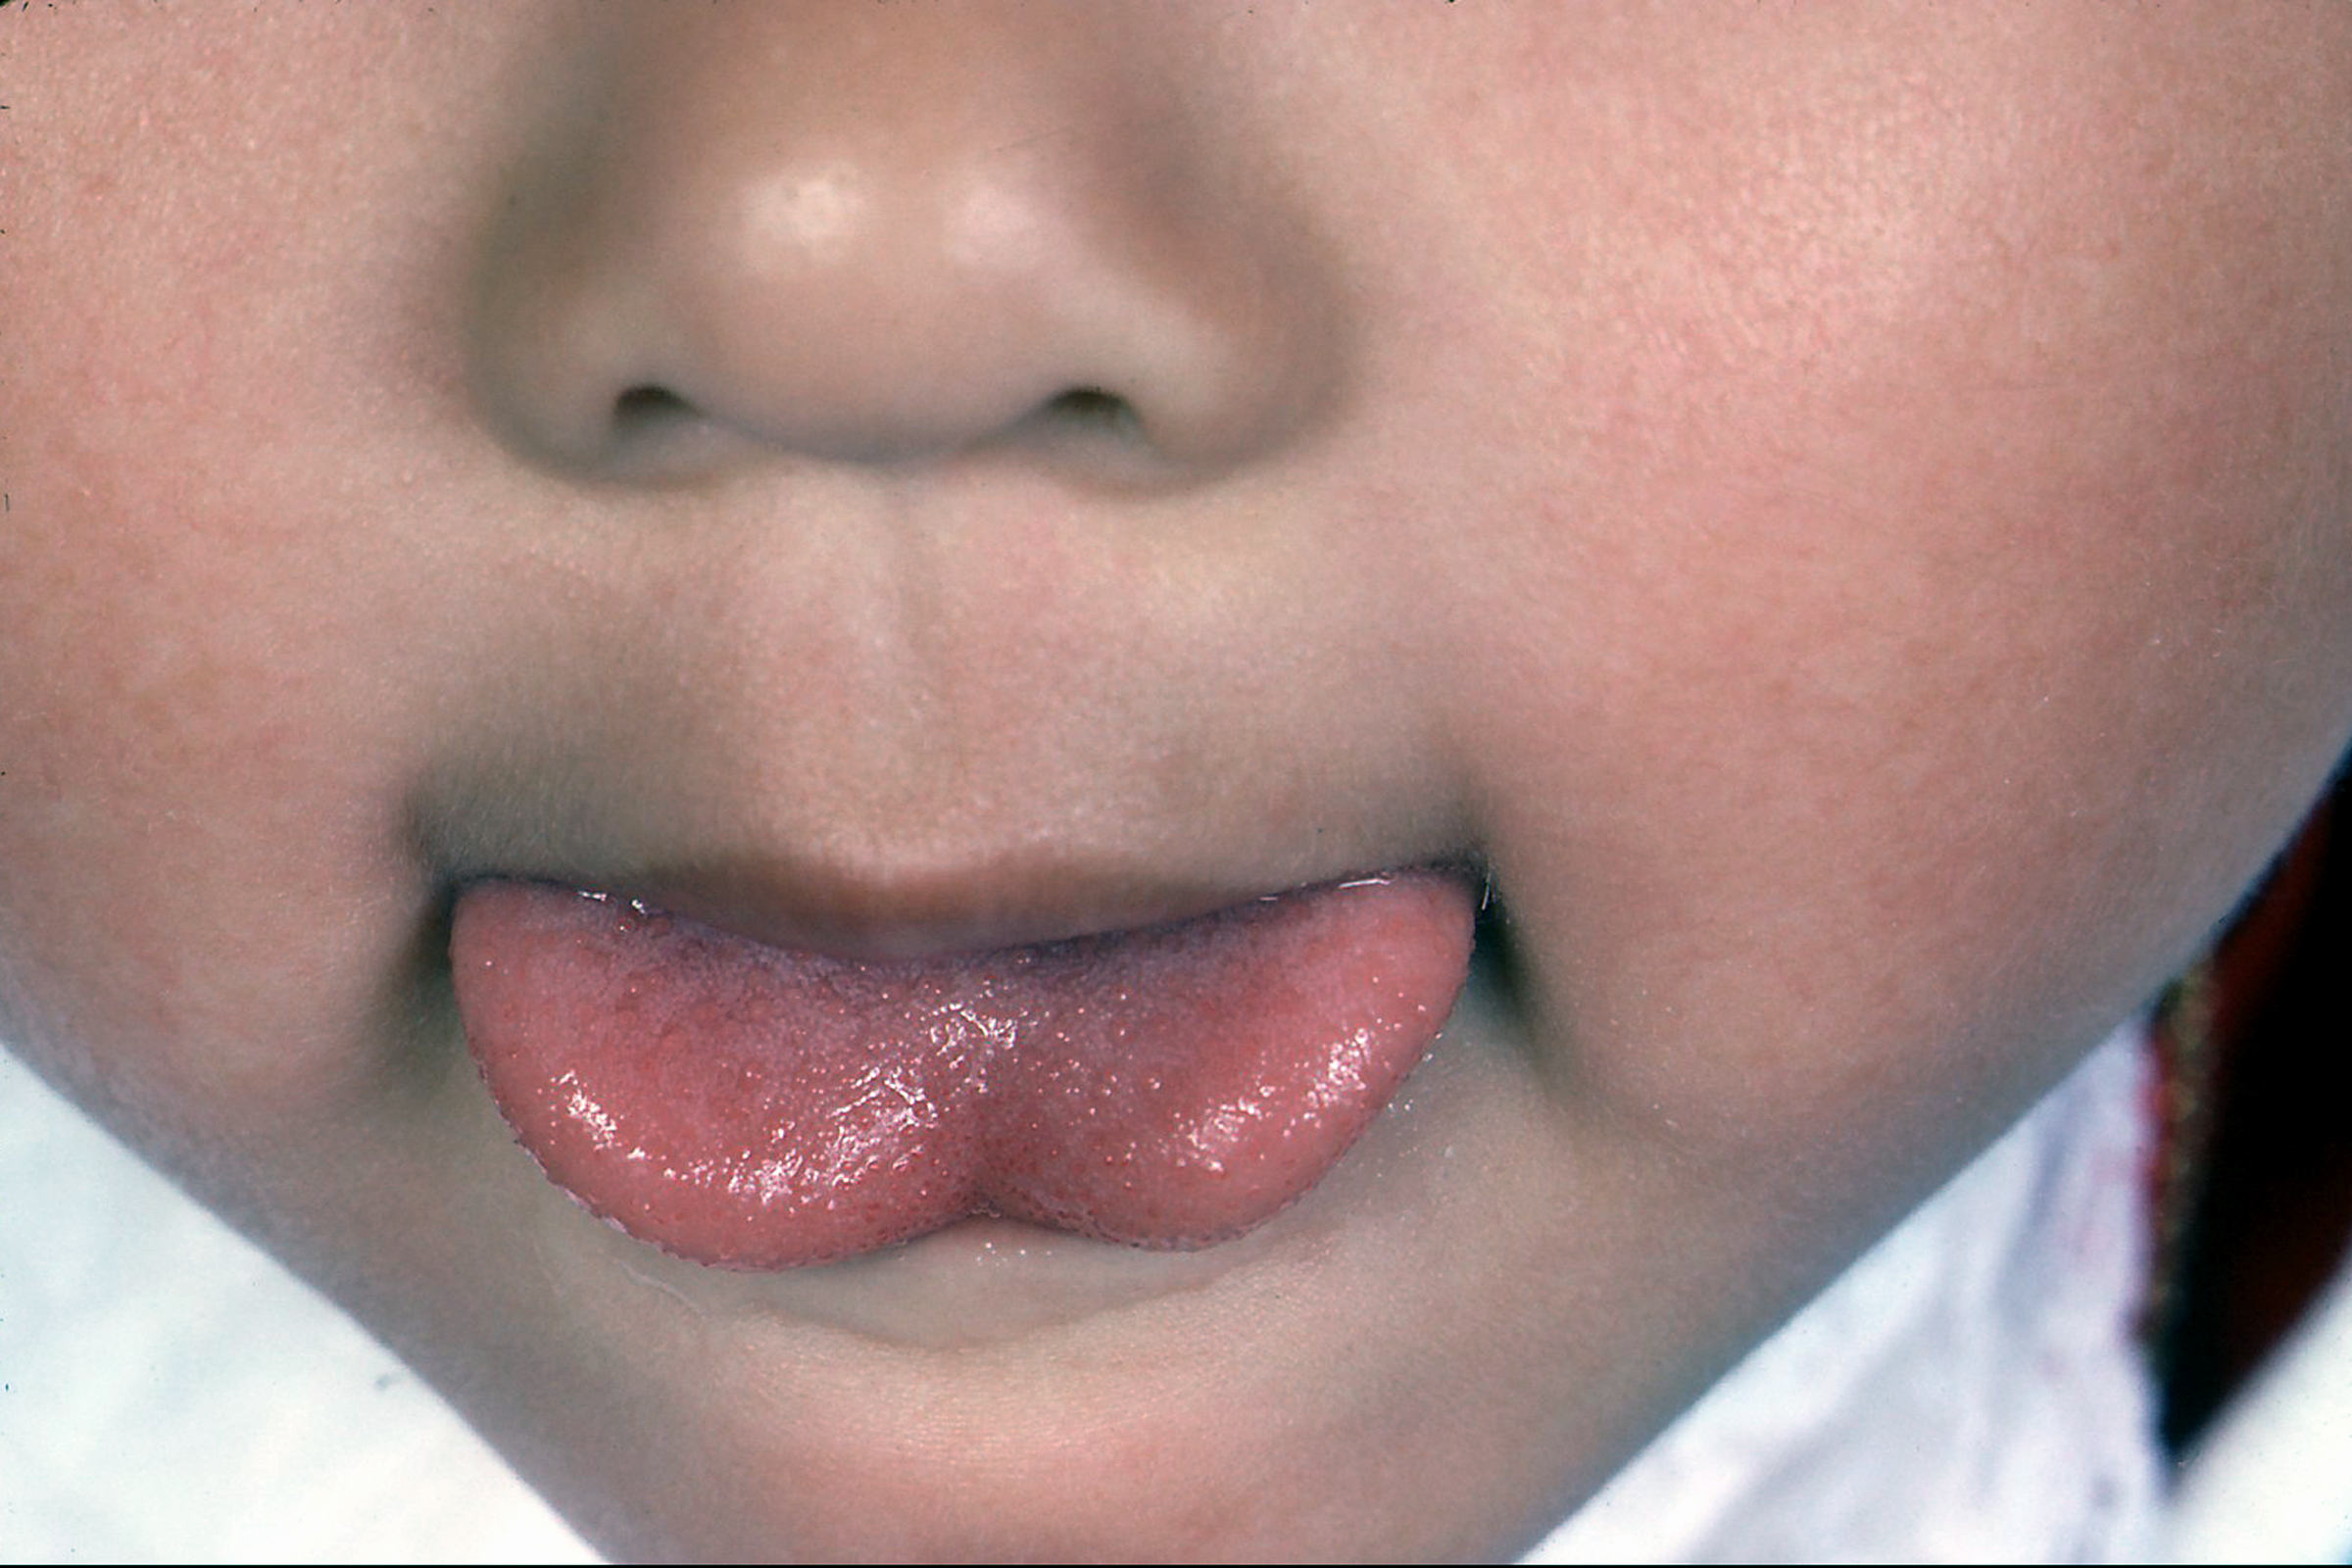 正常婴儿舌系带图片（大西几）-幼儿百科-魔术铺